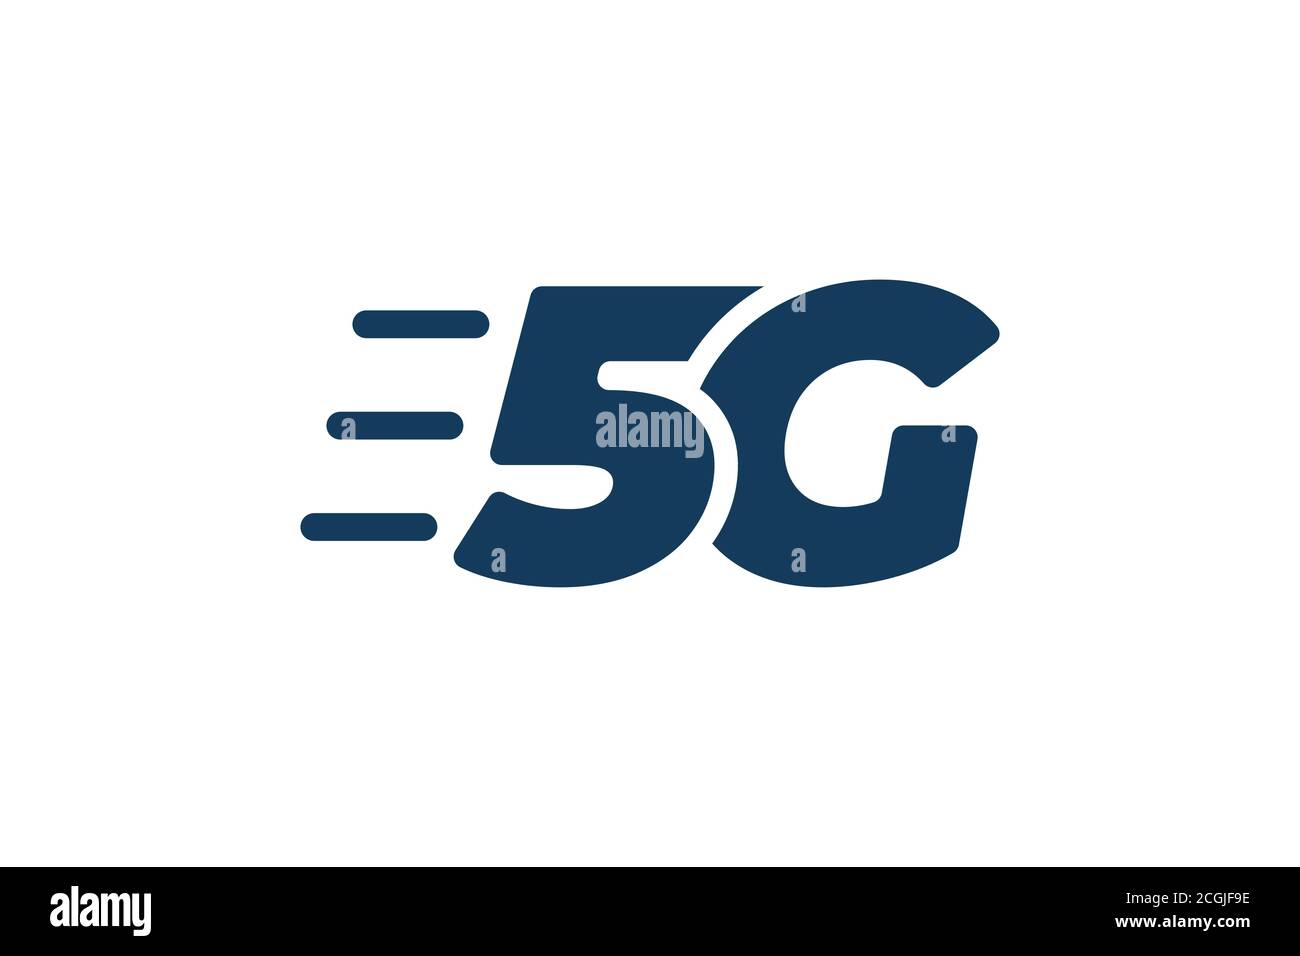 5G Netzanbindung Geschäftssymbol. 5. Generation Wireless High Speed Internet Technologie Zeichen. Vektor 5 G Kommunikation Emblem flach eps Design Vorlage isoliert Stock Vektor